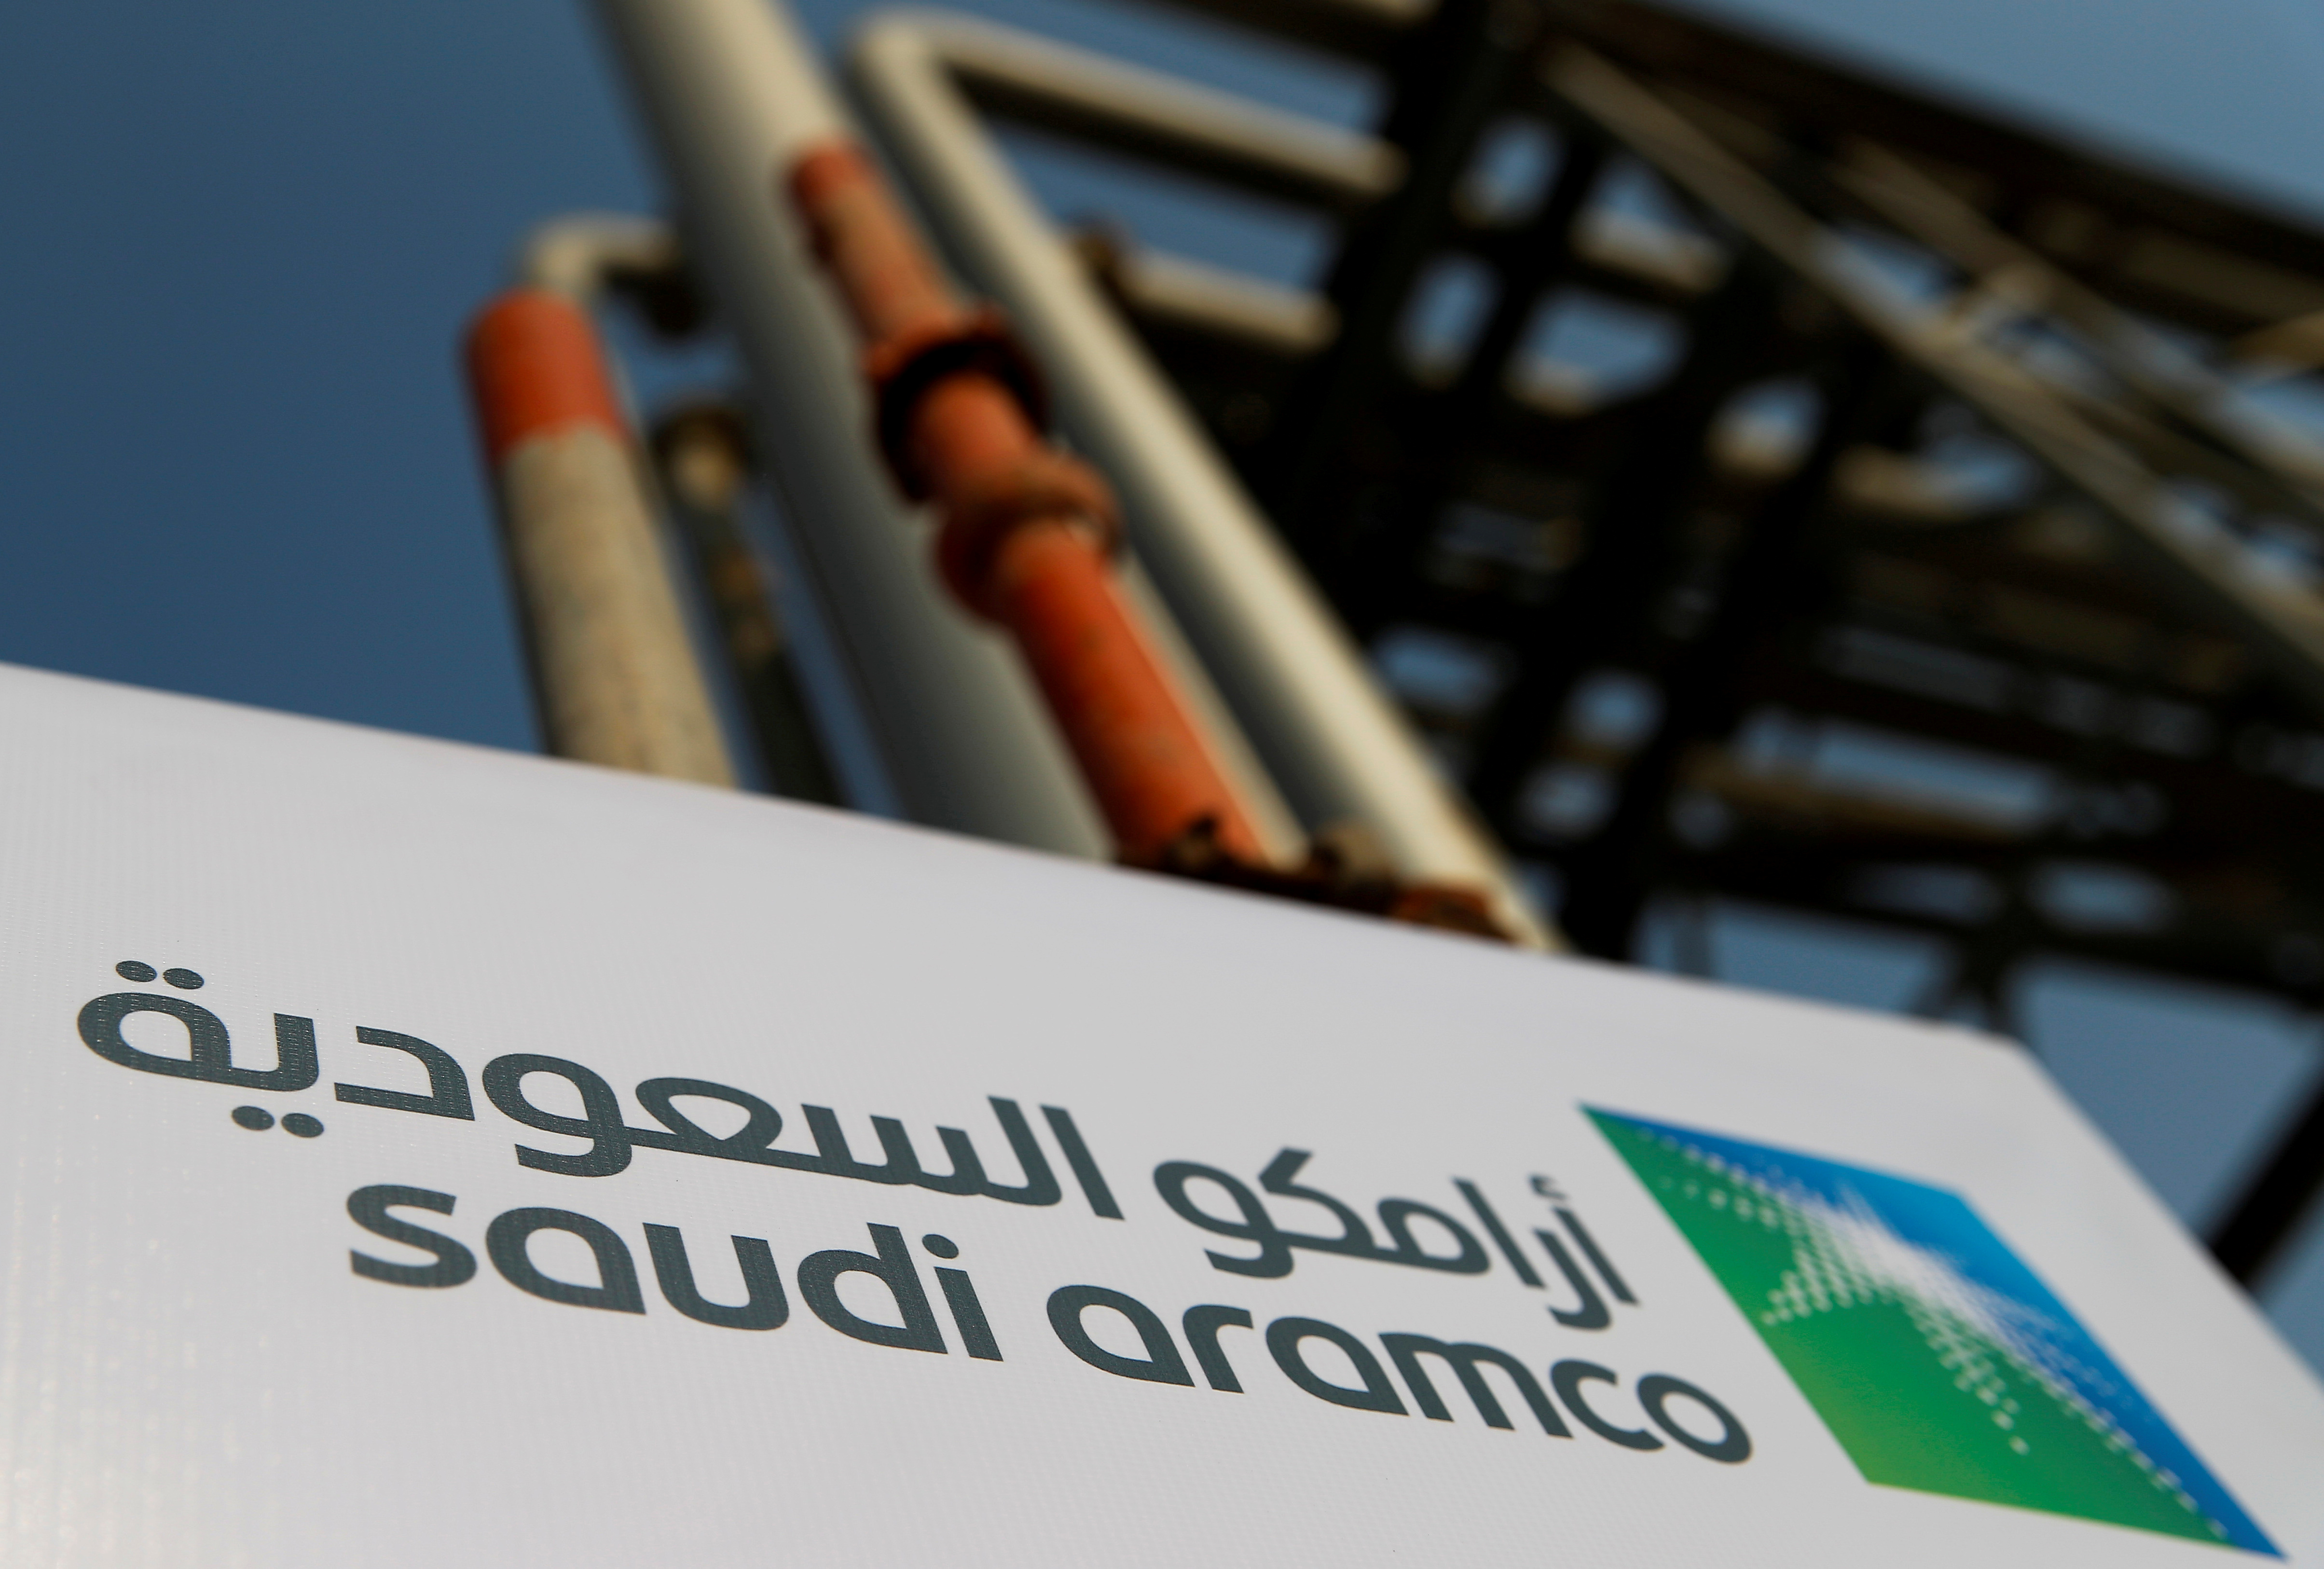 L'Arabie saoudite espère lever de 20 milliards à 40 milliards de dollars (18 milliards d'euros à 36 milliards d'euros) en plaçant en bourse de Ryad 1% à 2% du capital de sa compagnie pétrolière, dit-on de sources au fait du dossier.